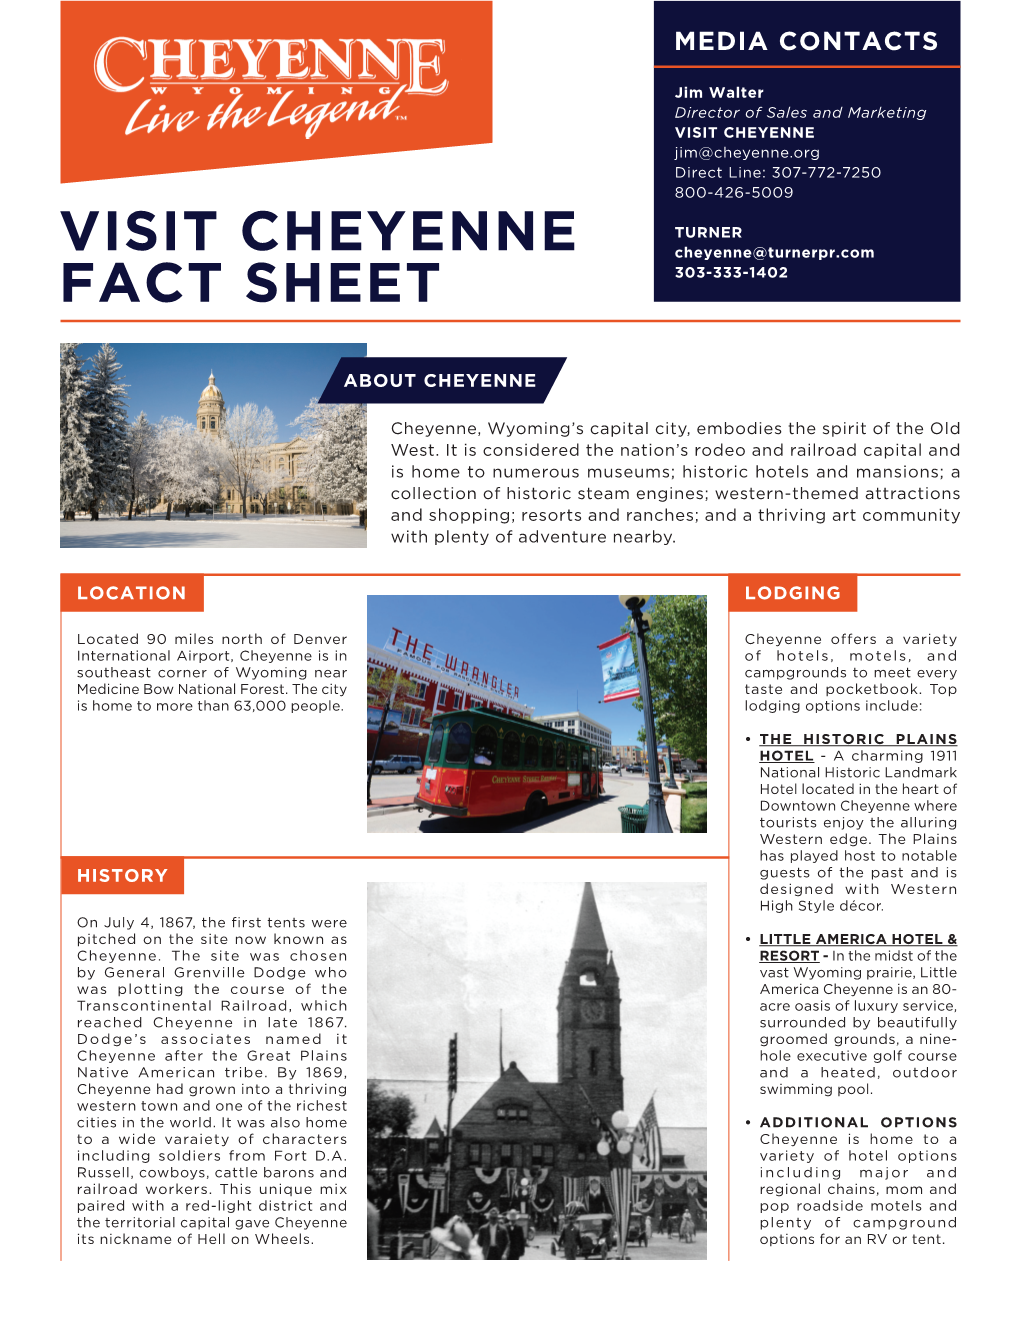 Visit Cheyenne Fact Sheet